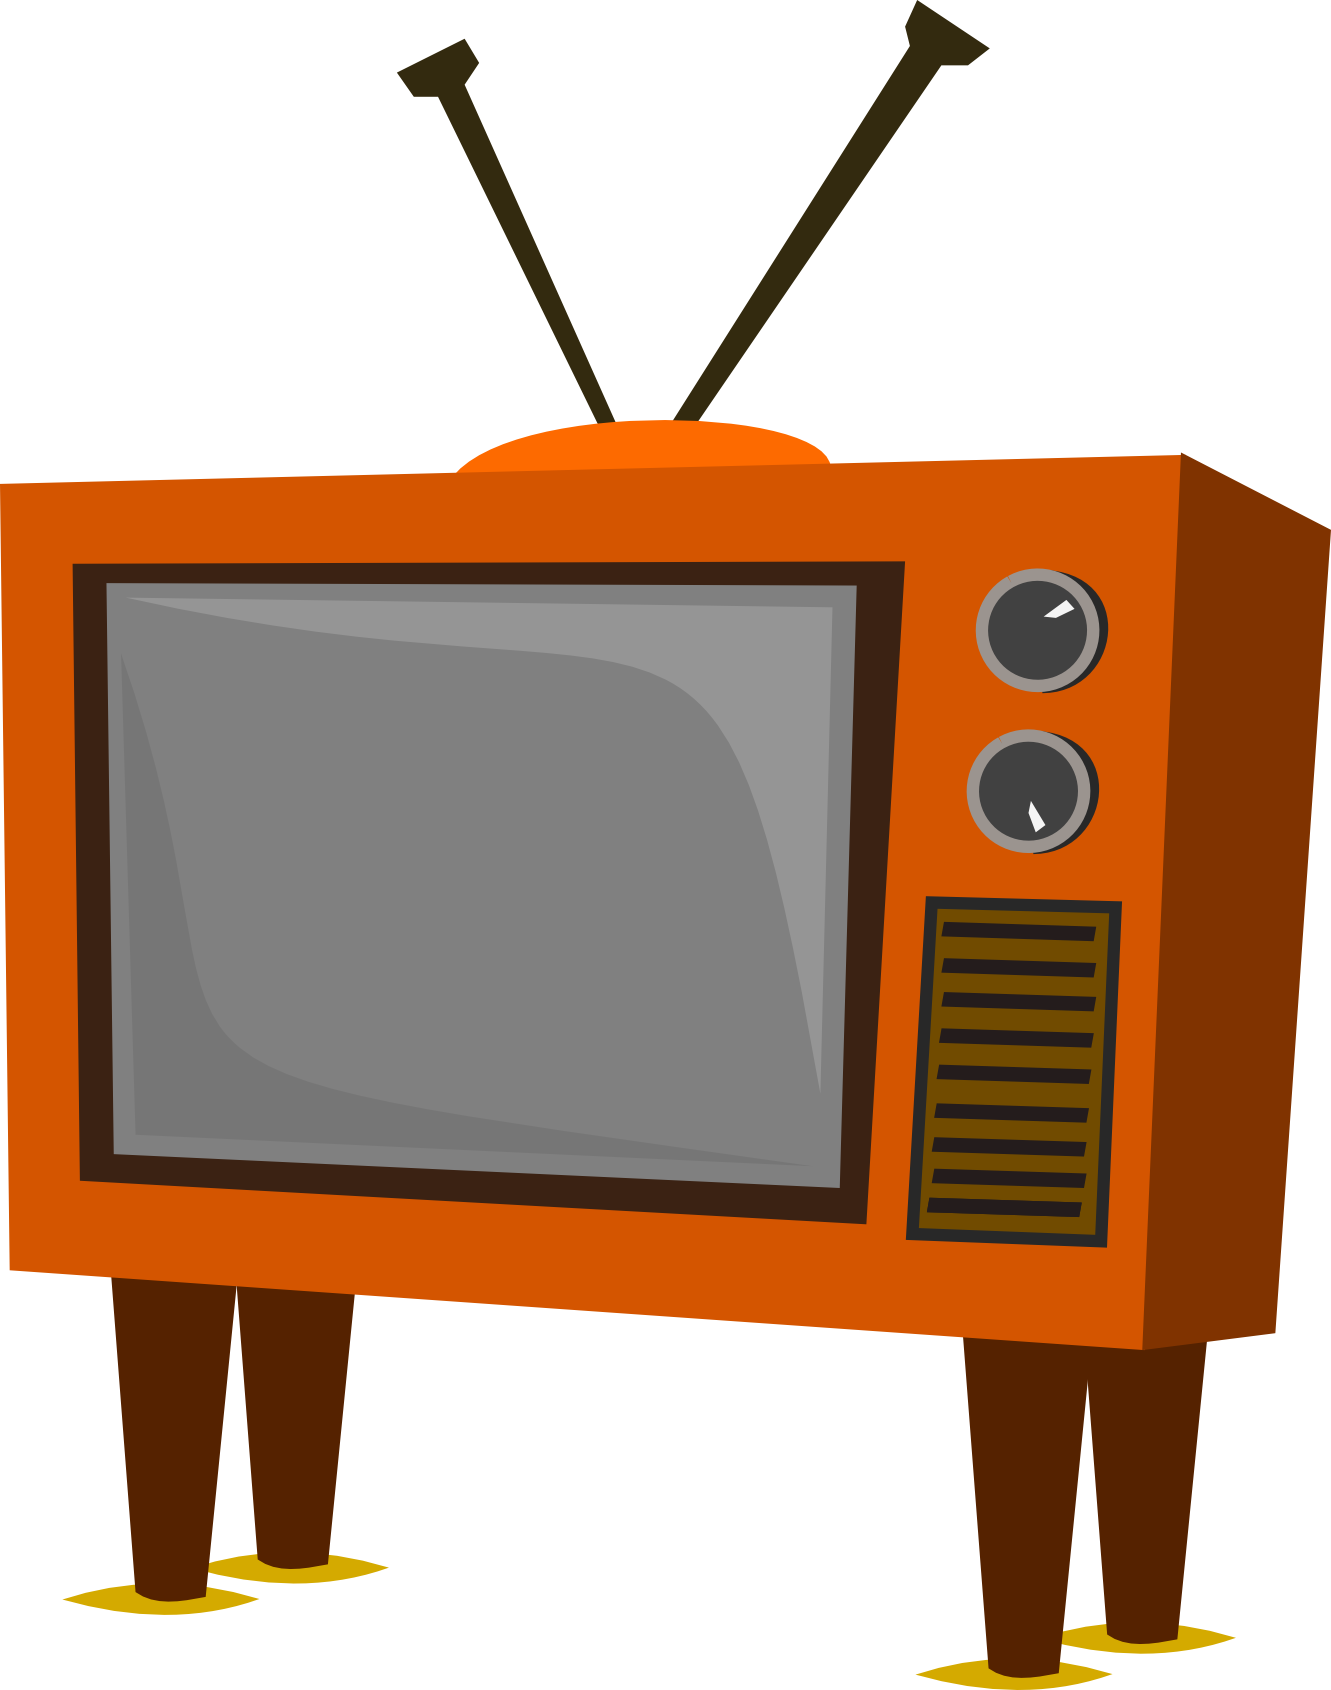 flat screen television clip art